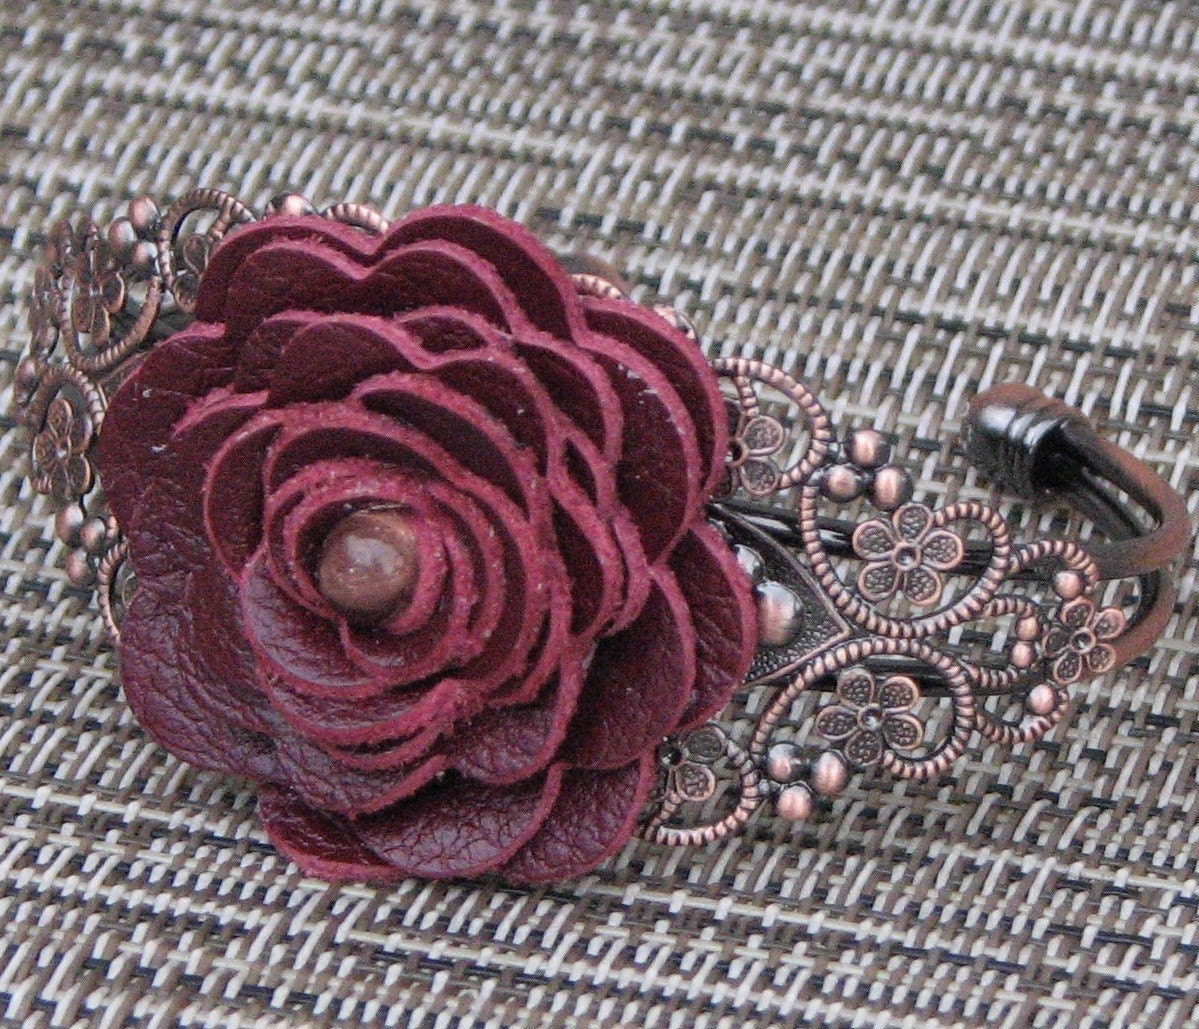 Floral Cuff Bracelet, Wine Leather Rose/Filigree Detailing